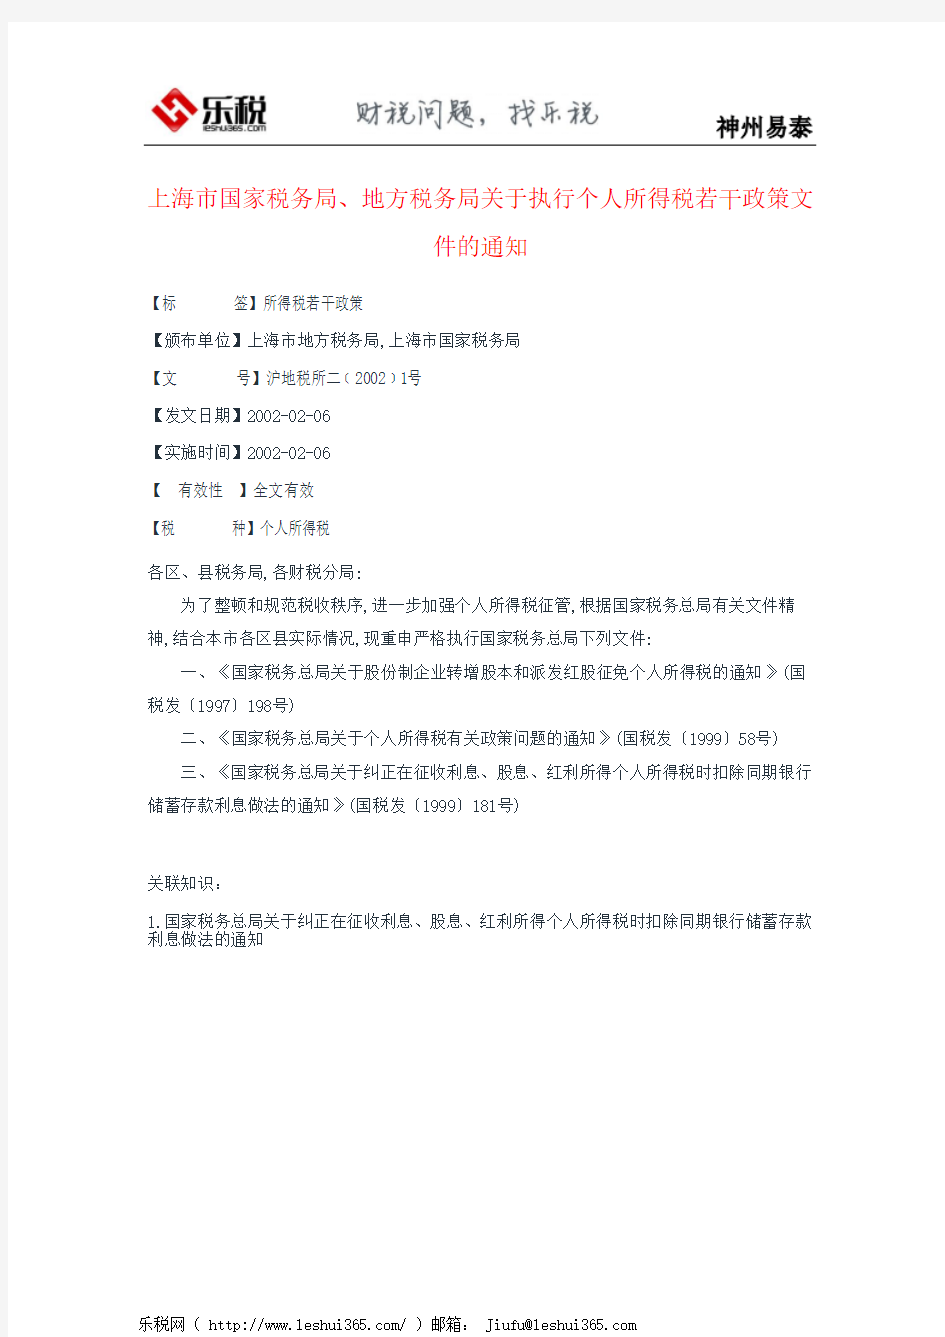 上海市国家税务局、地方税务局关于执行个人所得税若干政策文件的通知